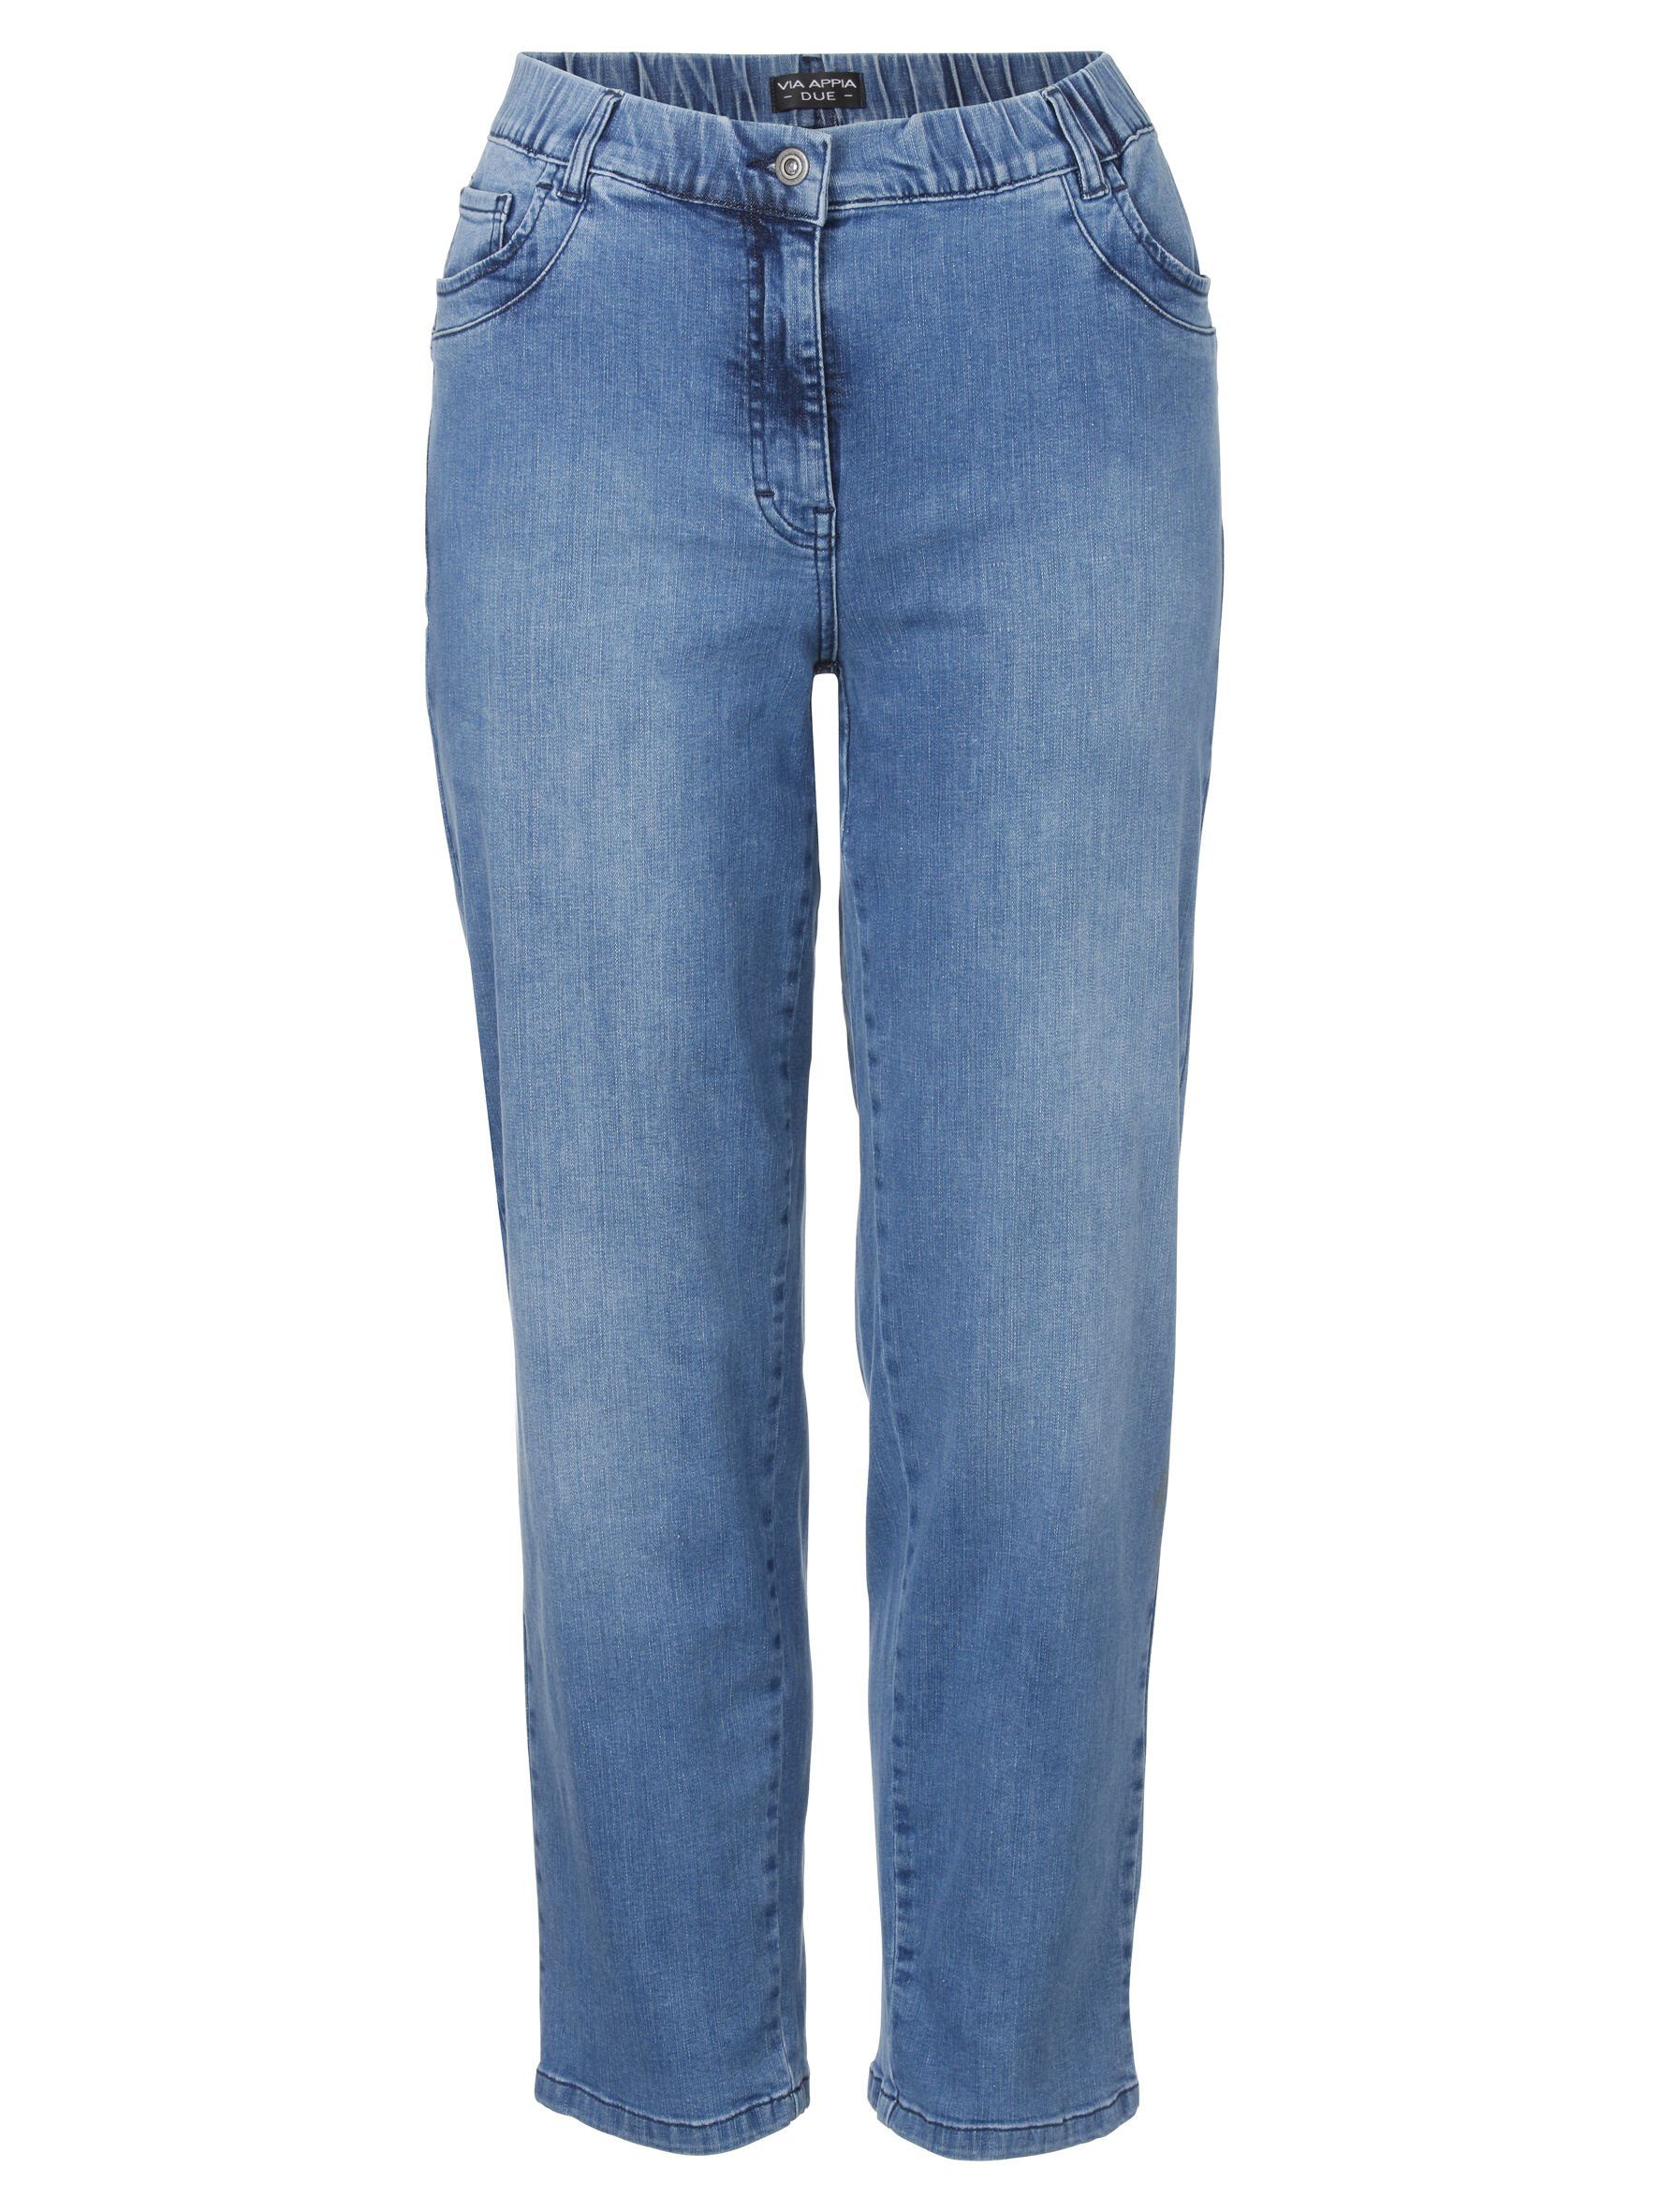 VIA APPIA DUE 5-Pocket-Jeans Klassische 5-Pocket-Jeans mit Ziernähten jeans blau